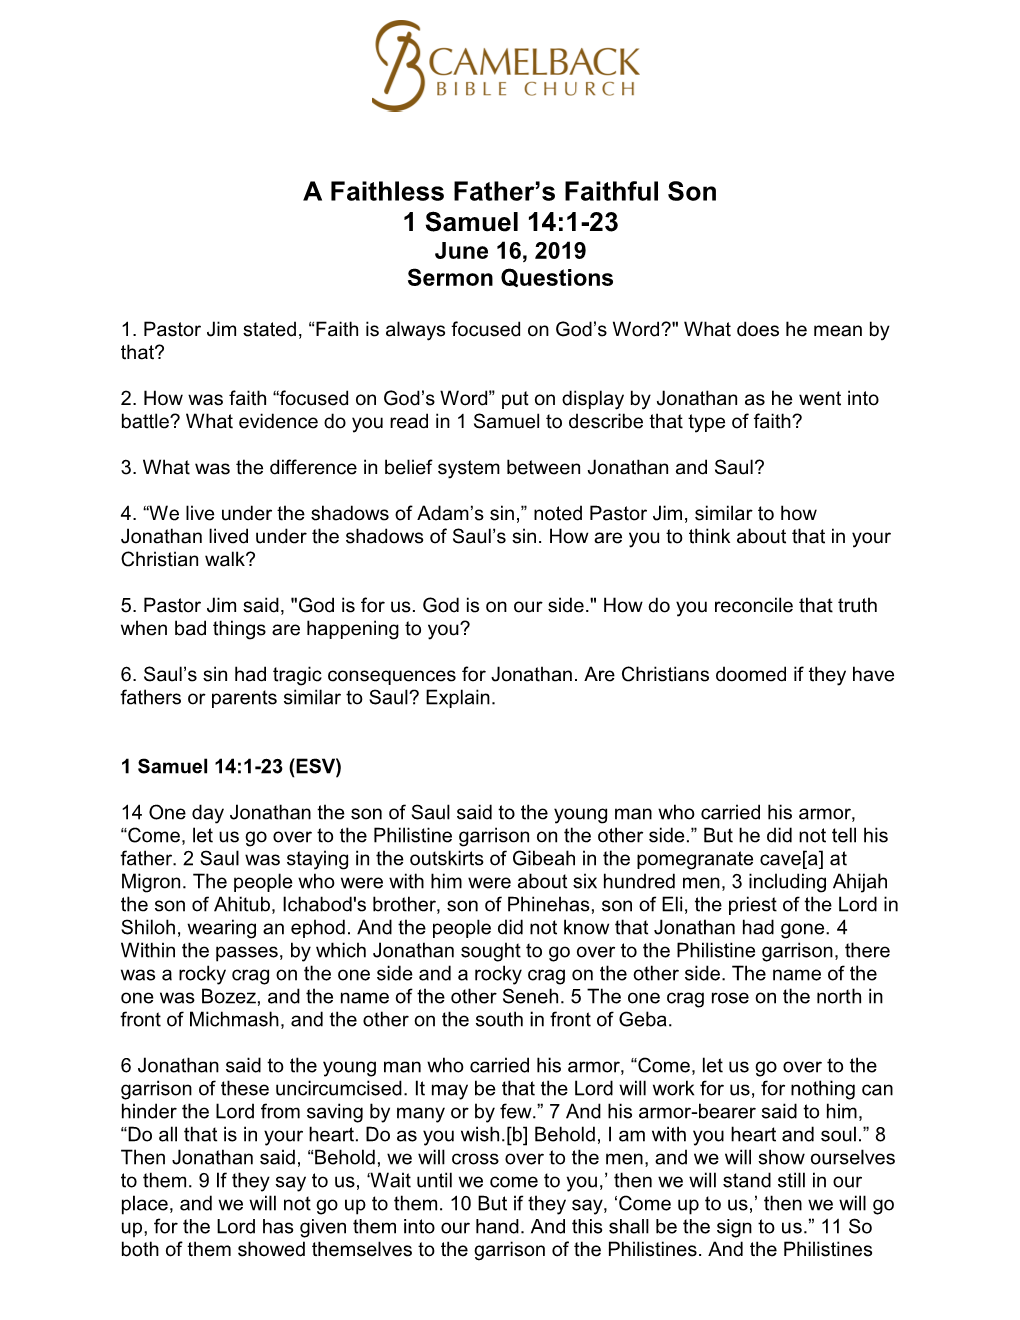 A Faithless Father's Faithful Son 1 Samuel 14:1-23